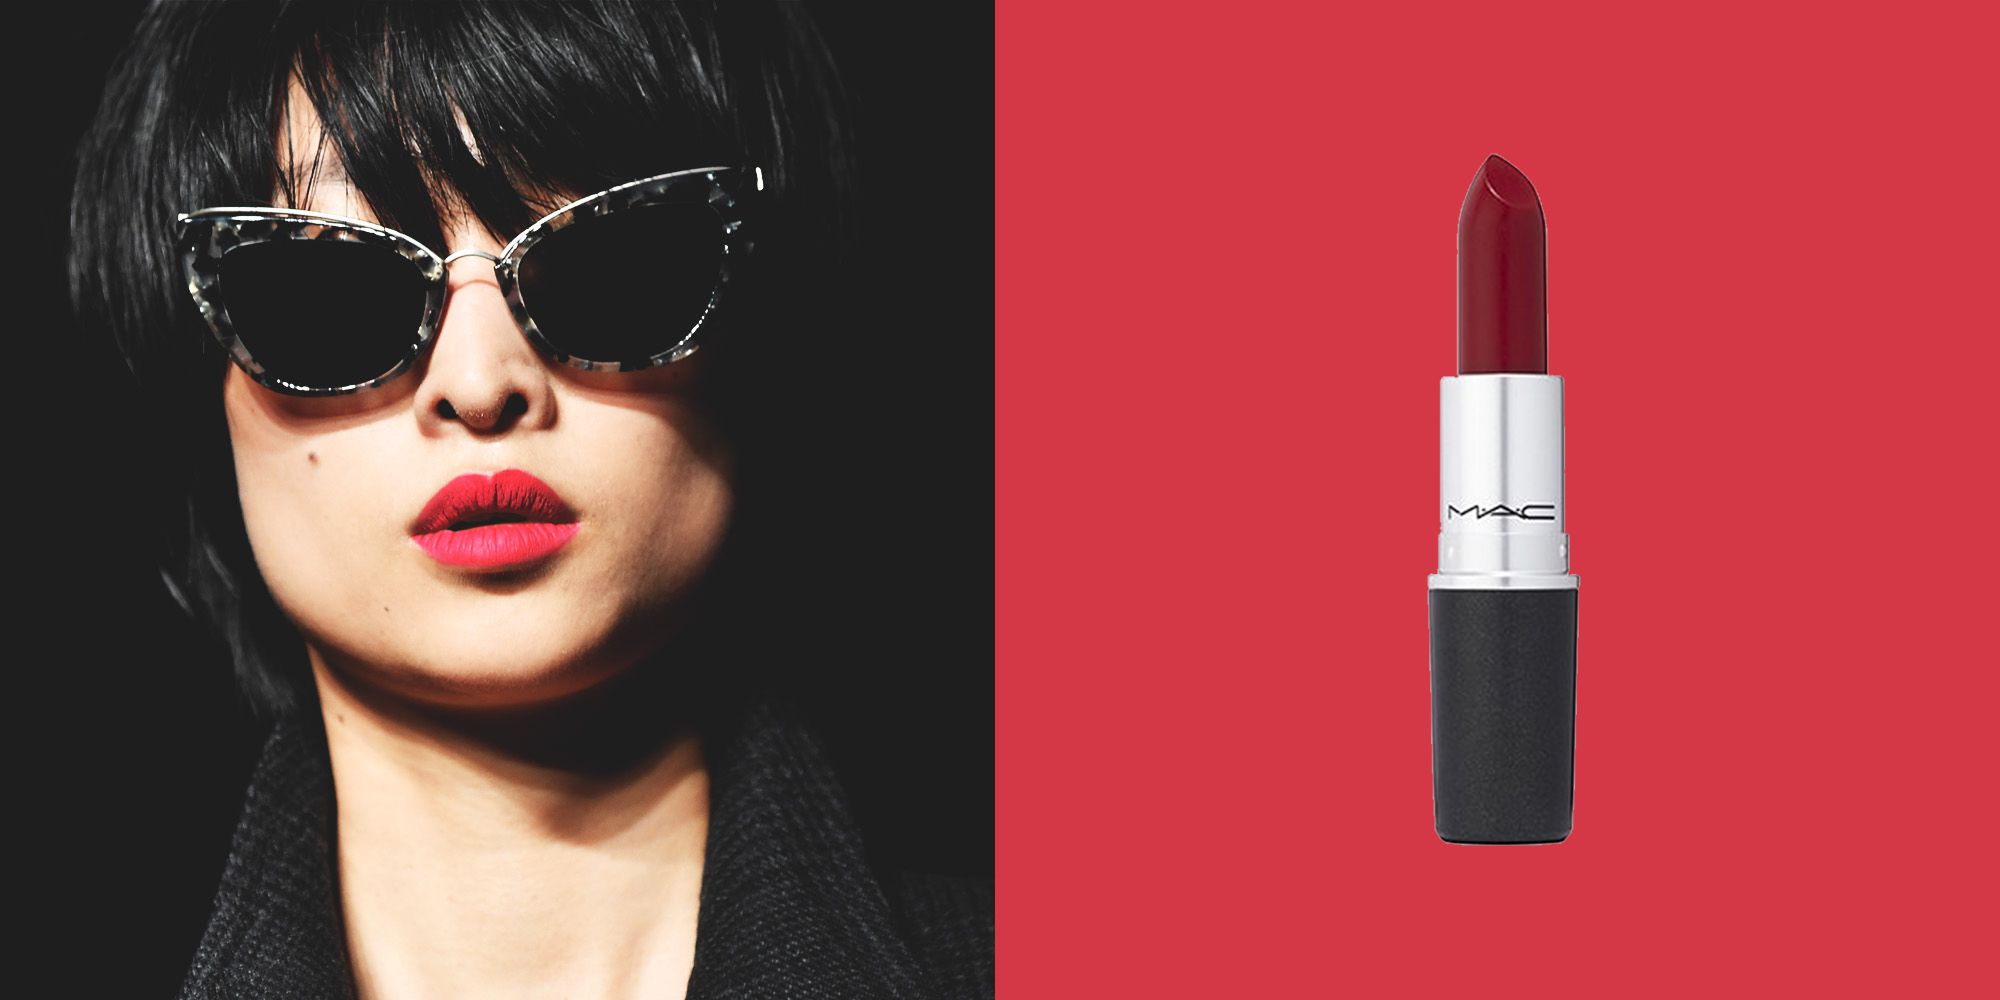 Beautiful Lipstick Girl Xxx - 11 Best Matte Lipsticks of 2018 - ELLE.com Editors Reveal Their ...